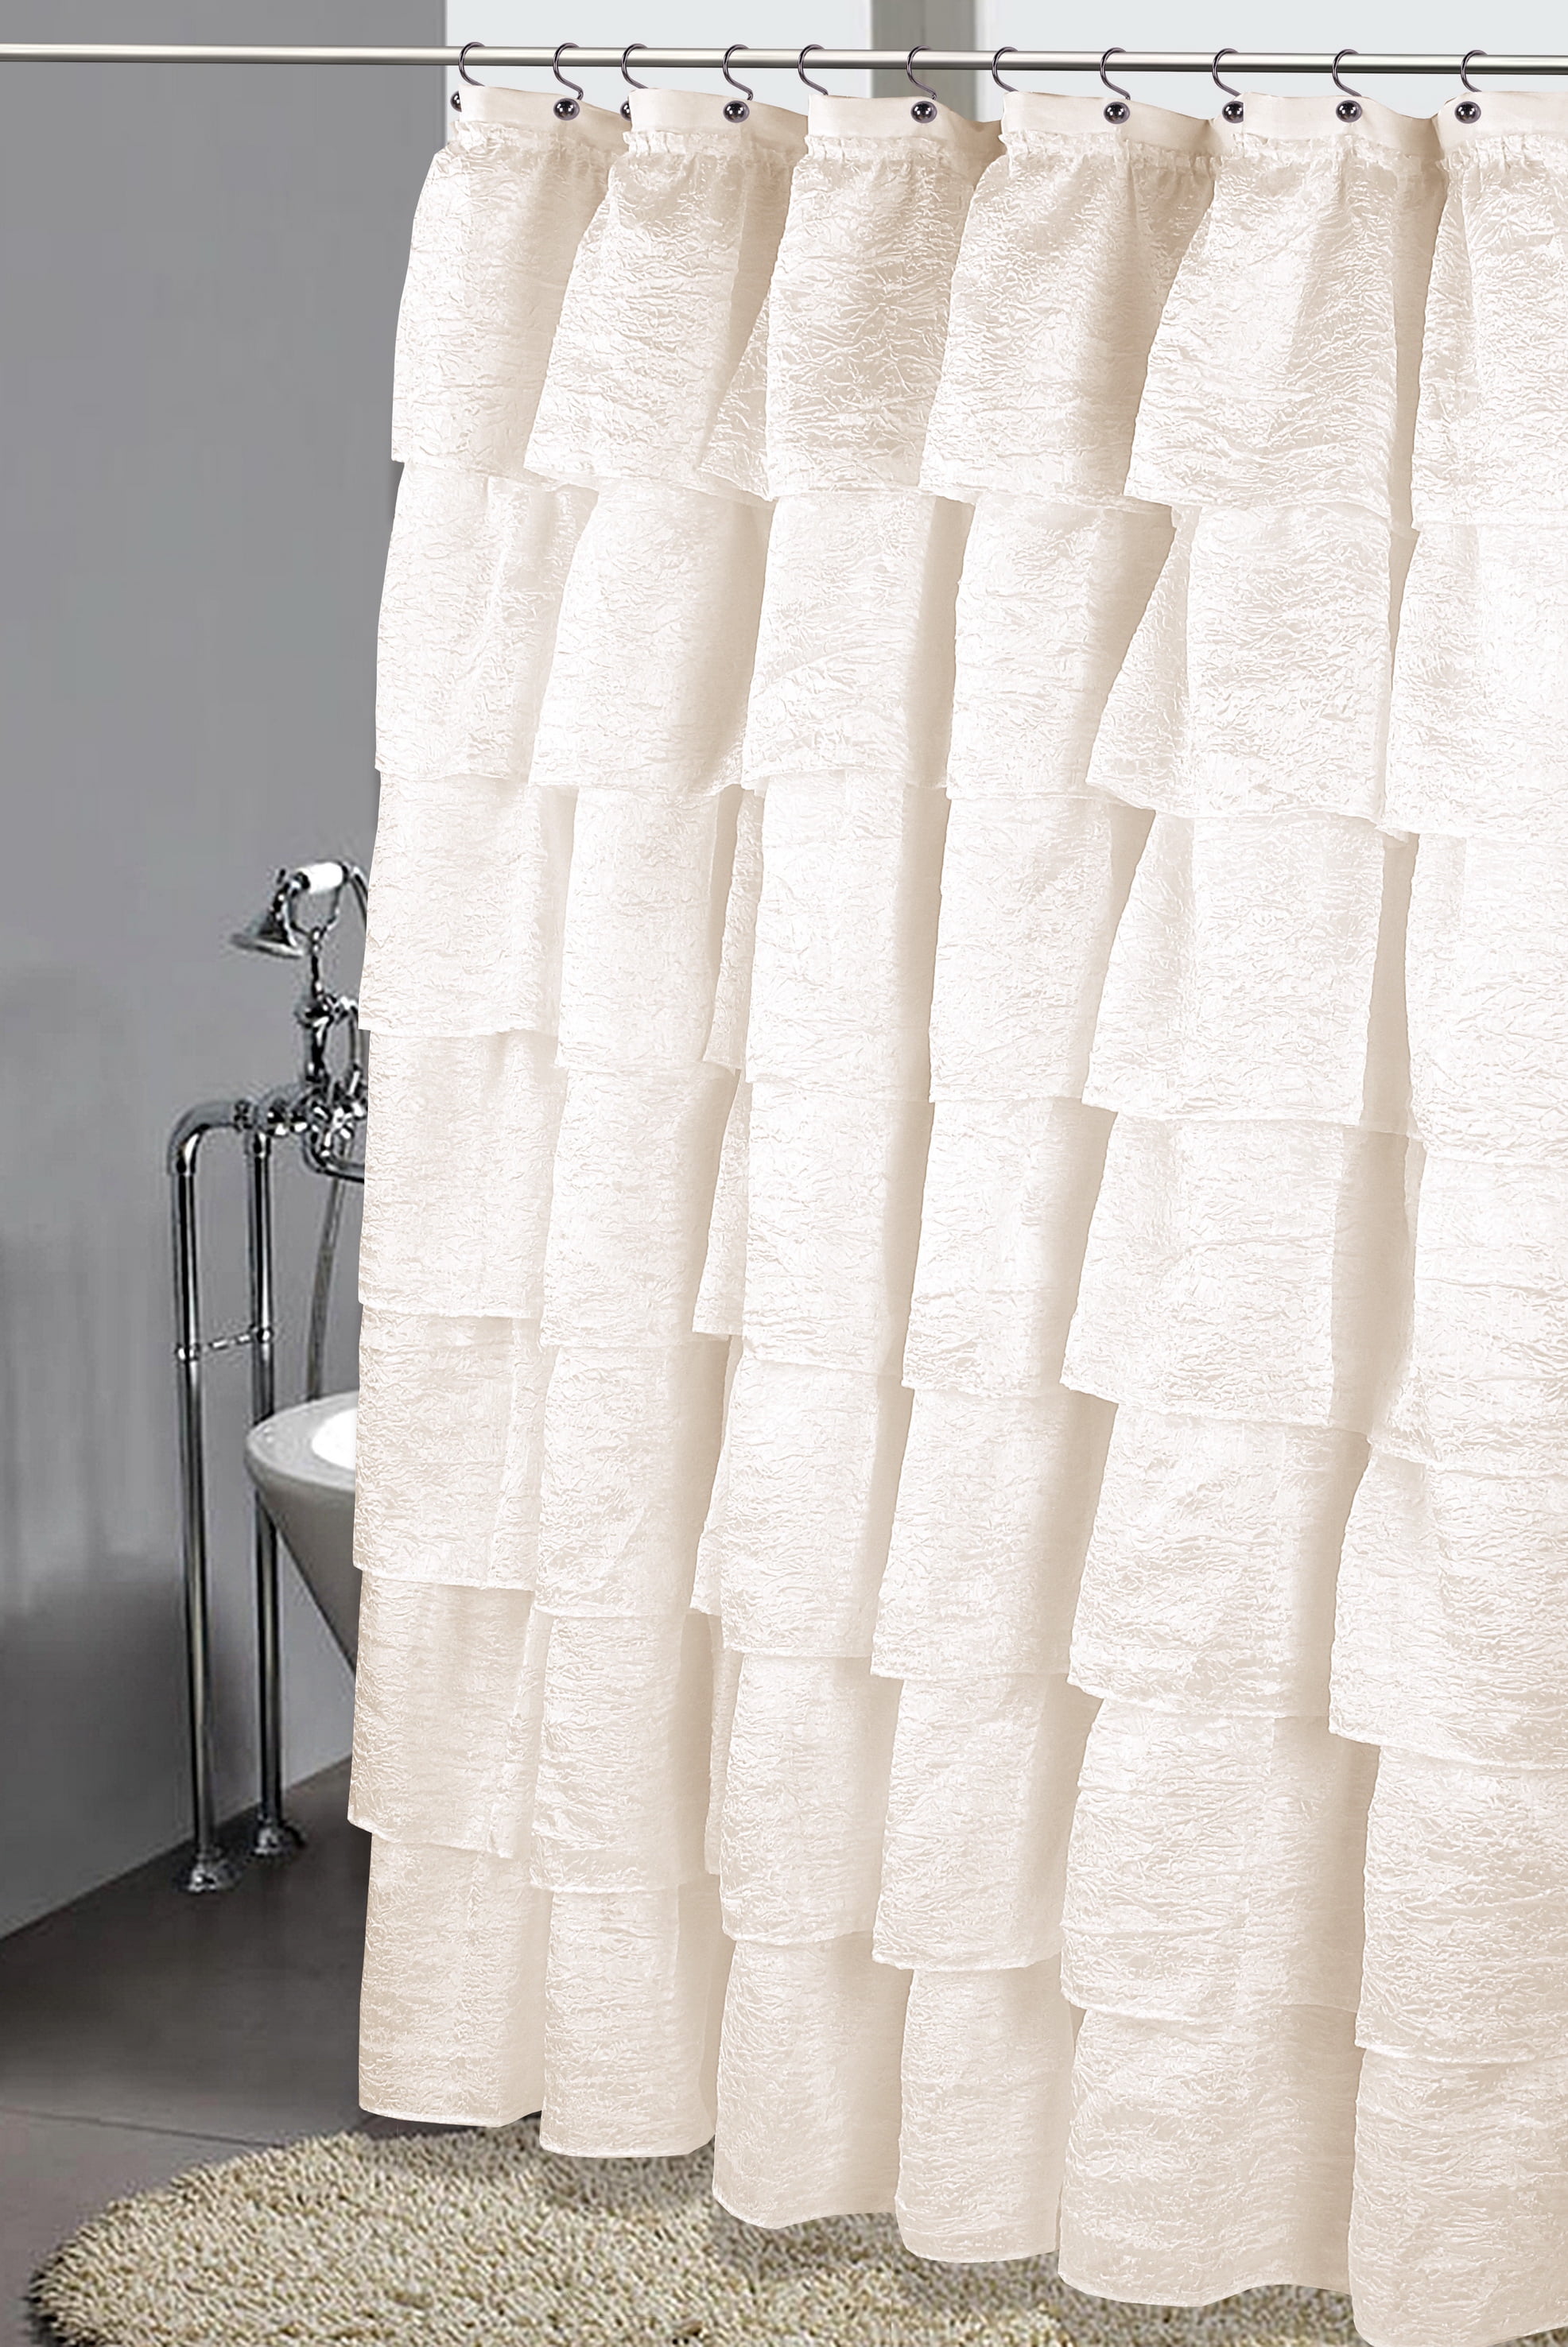 Waterproof Ruffle Layers Shower Curtain Ruffled Bathroom Curtain White 12 Hooks 